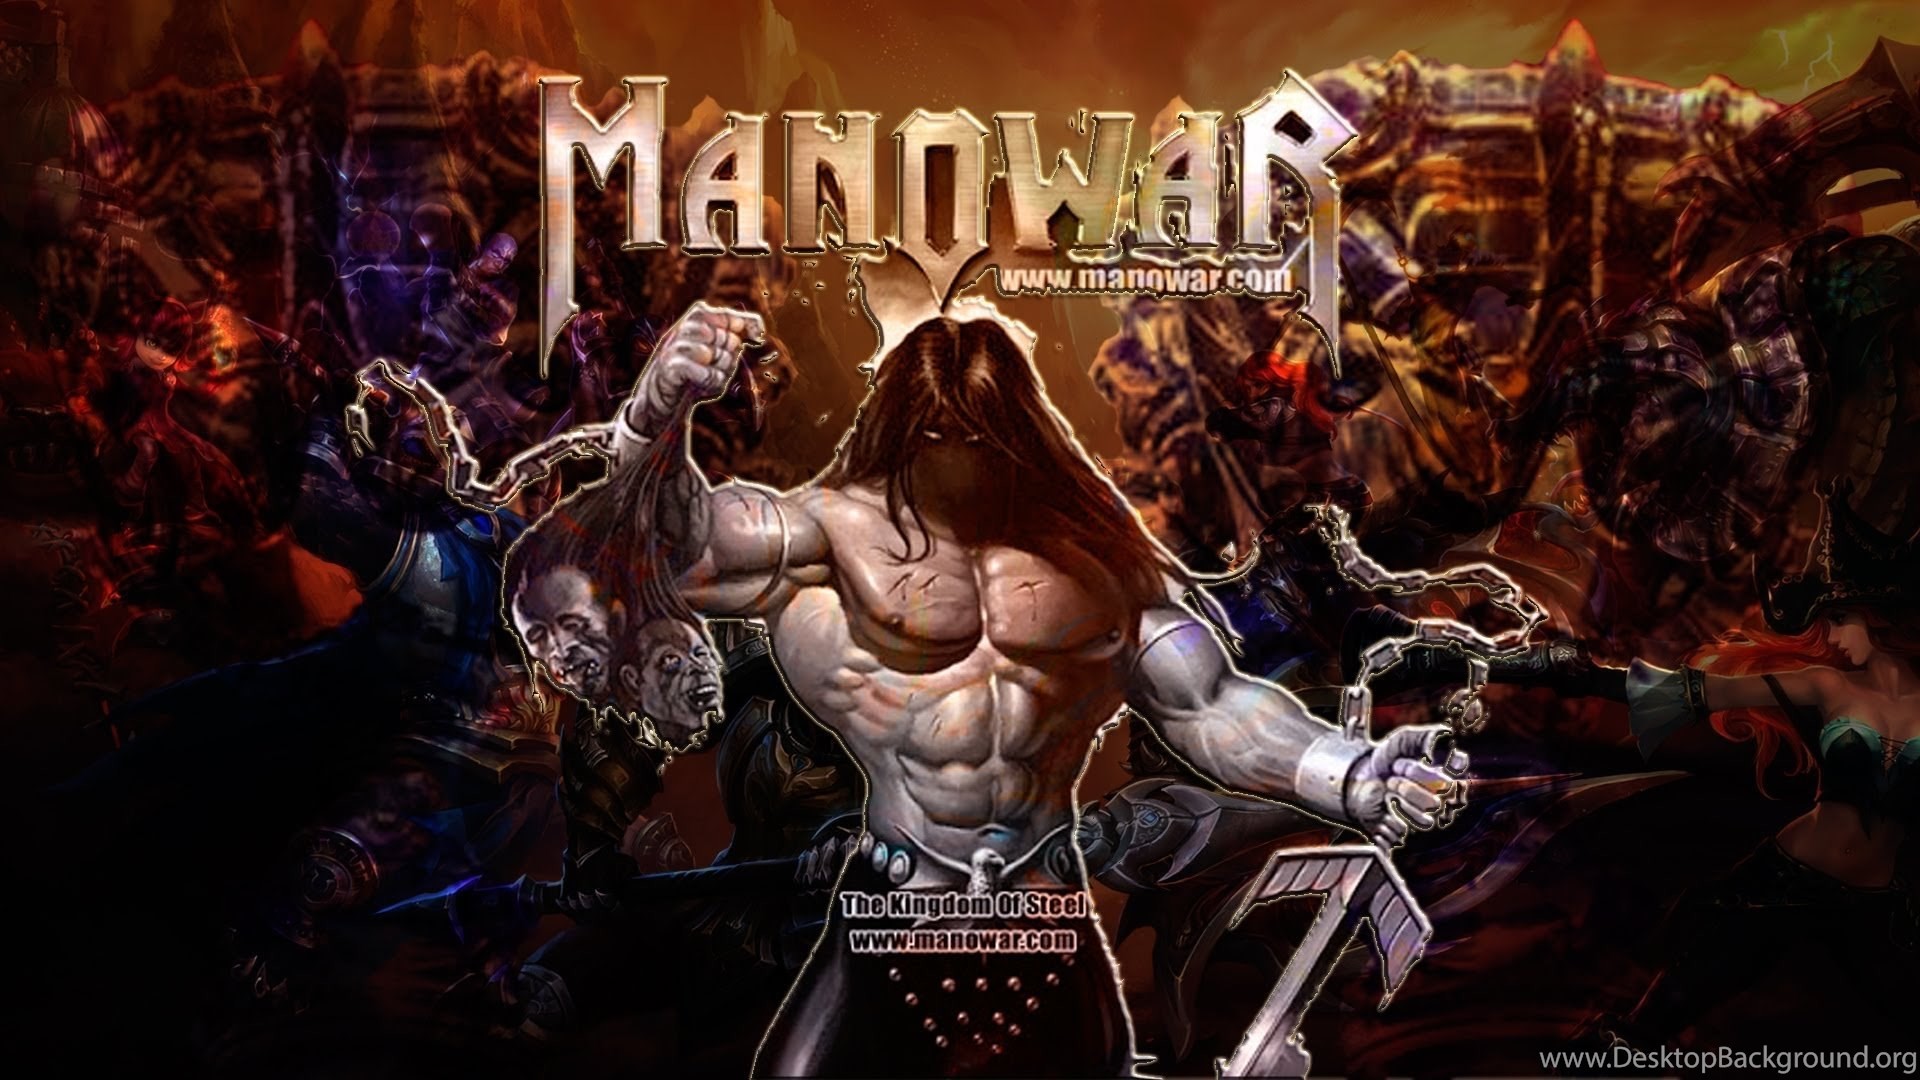 Manowar united. Постеры группы Manowar. Обложки дисков Manowar. Группа Manowar обложки. Manowar обложки альбомов.